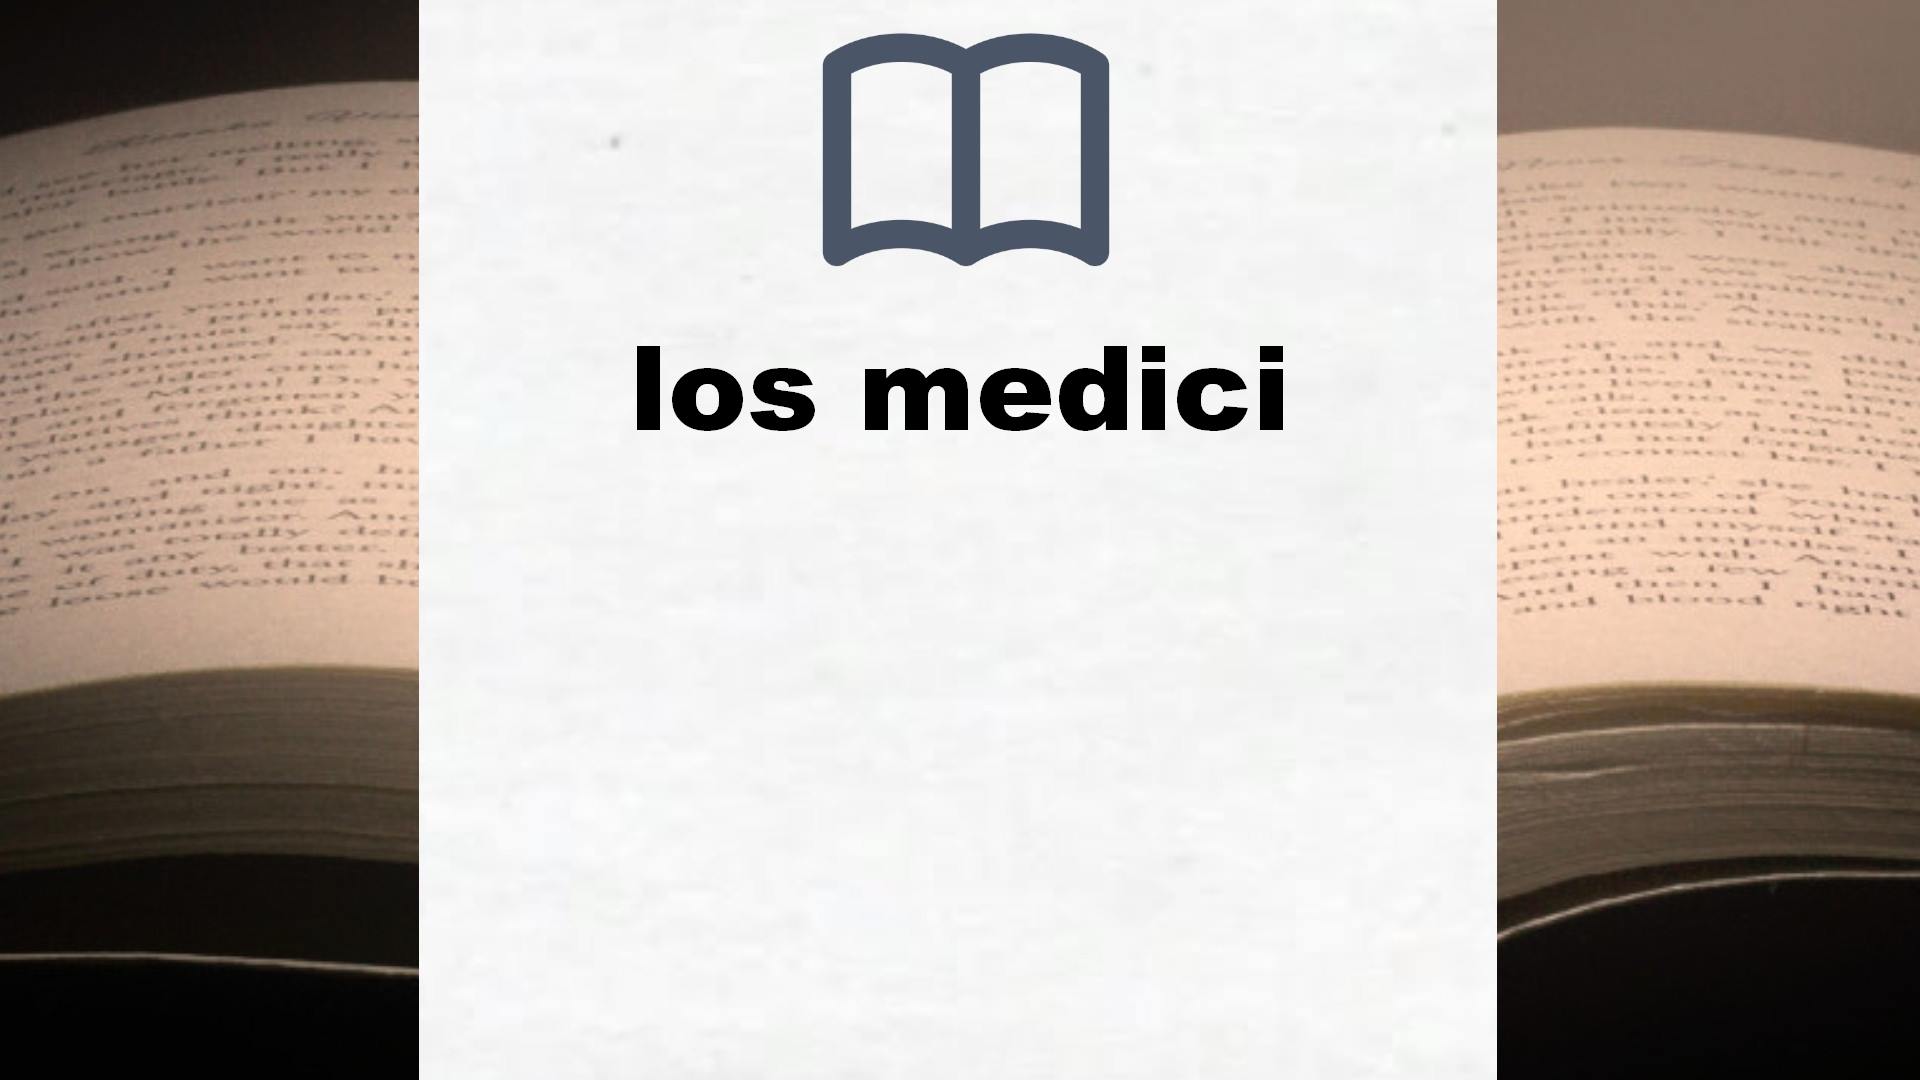 Libros sobre los medici